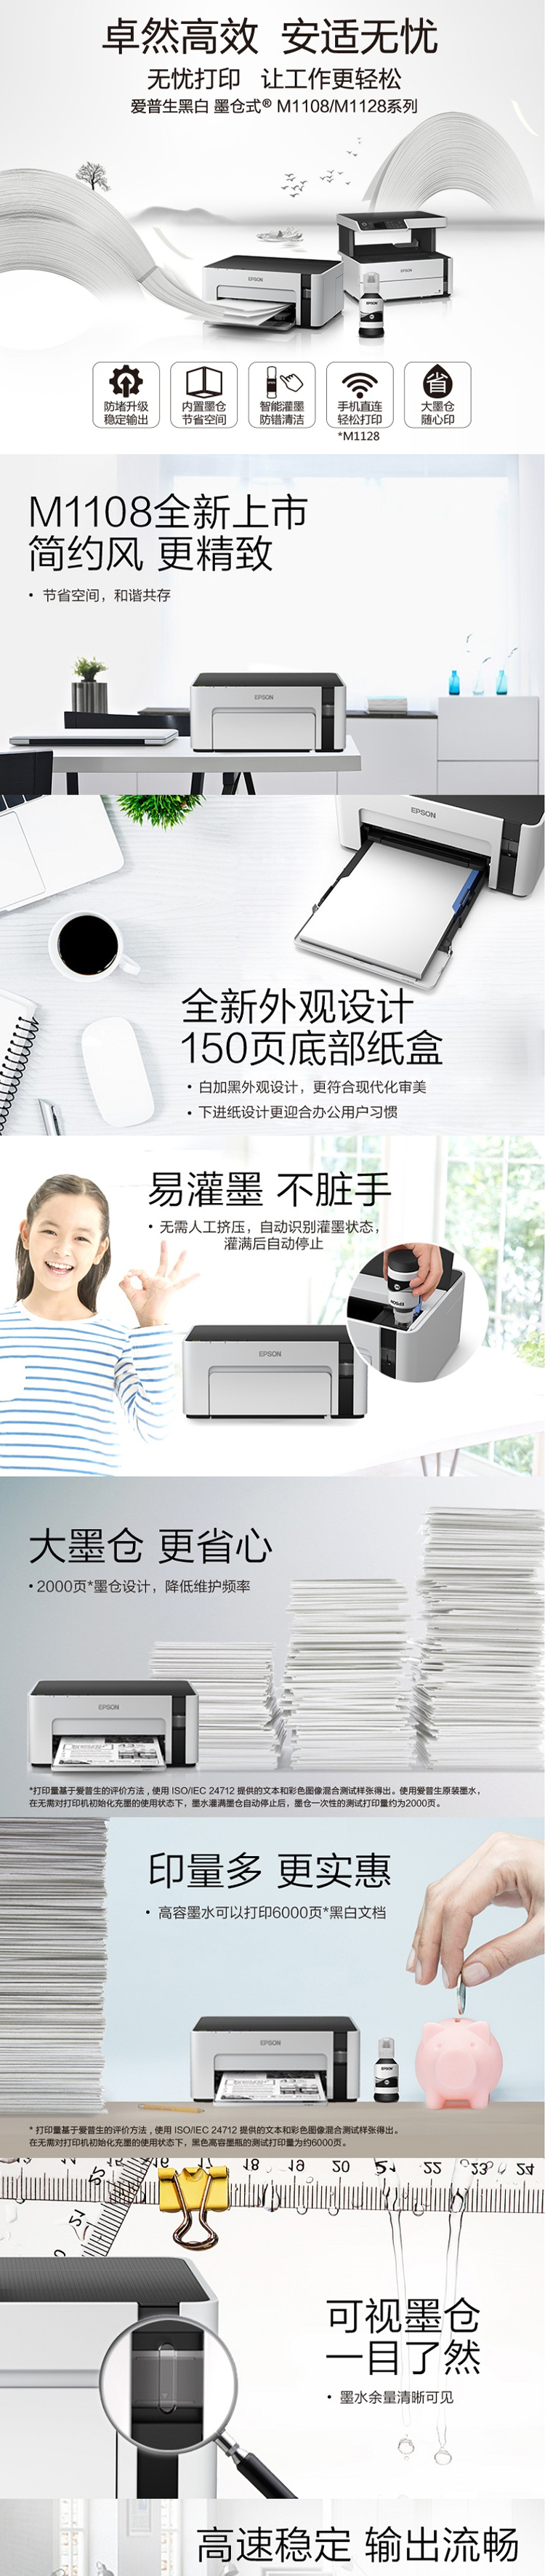 爱普生-EPSON墨仓式M1108黑白打印机全新设计内置墨仓家用商用打印无忧-1